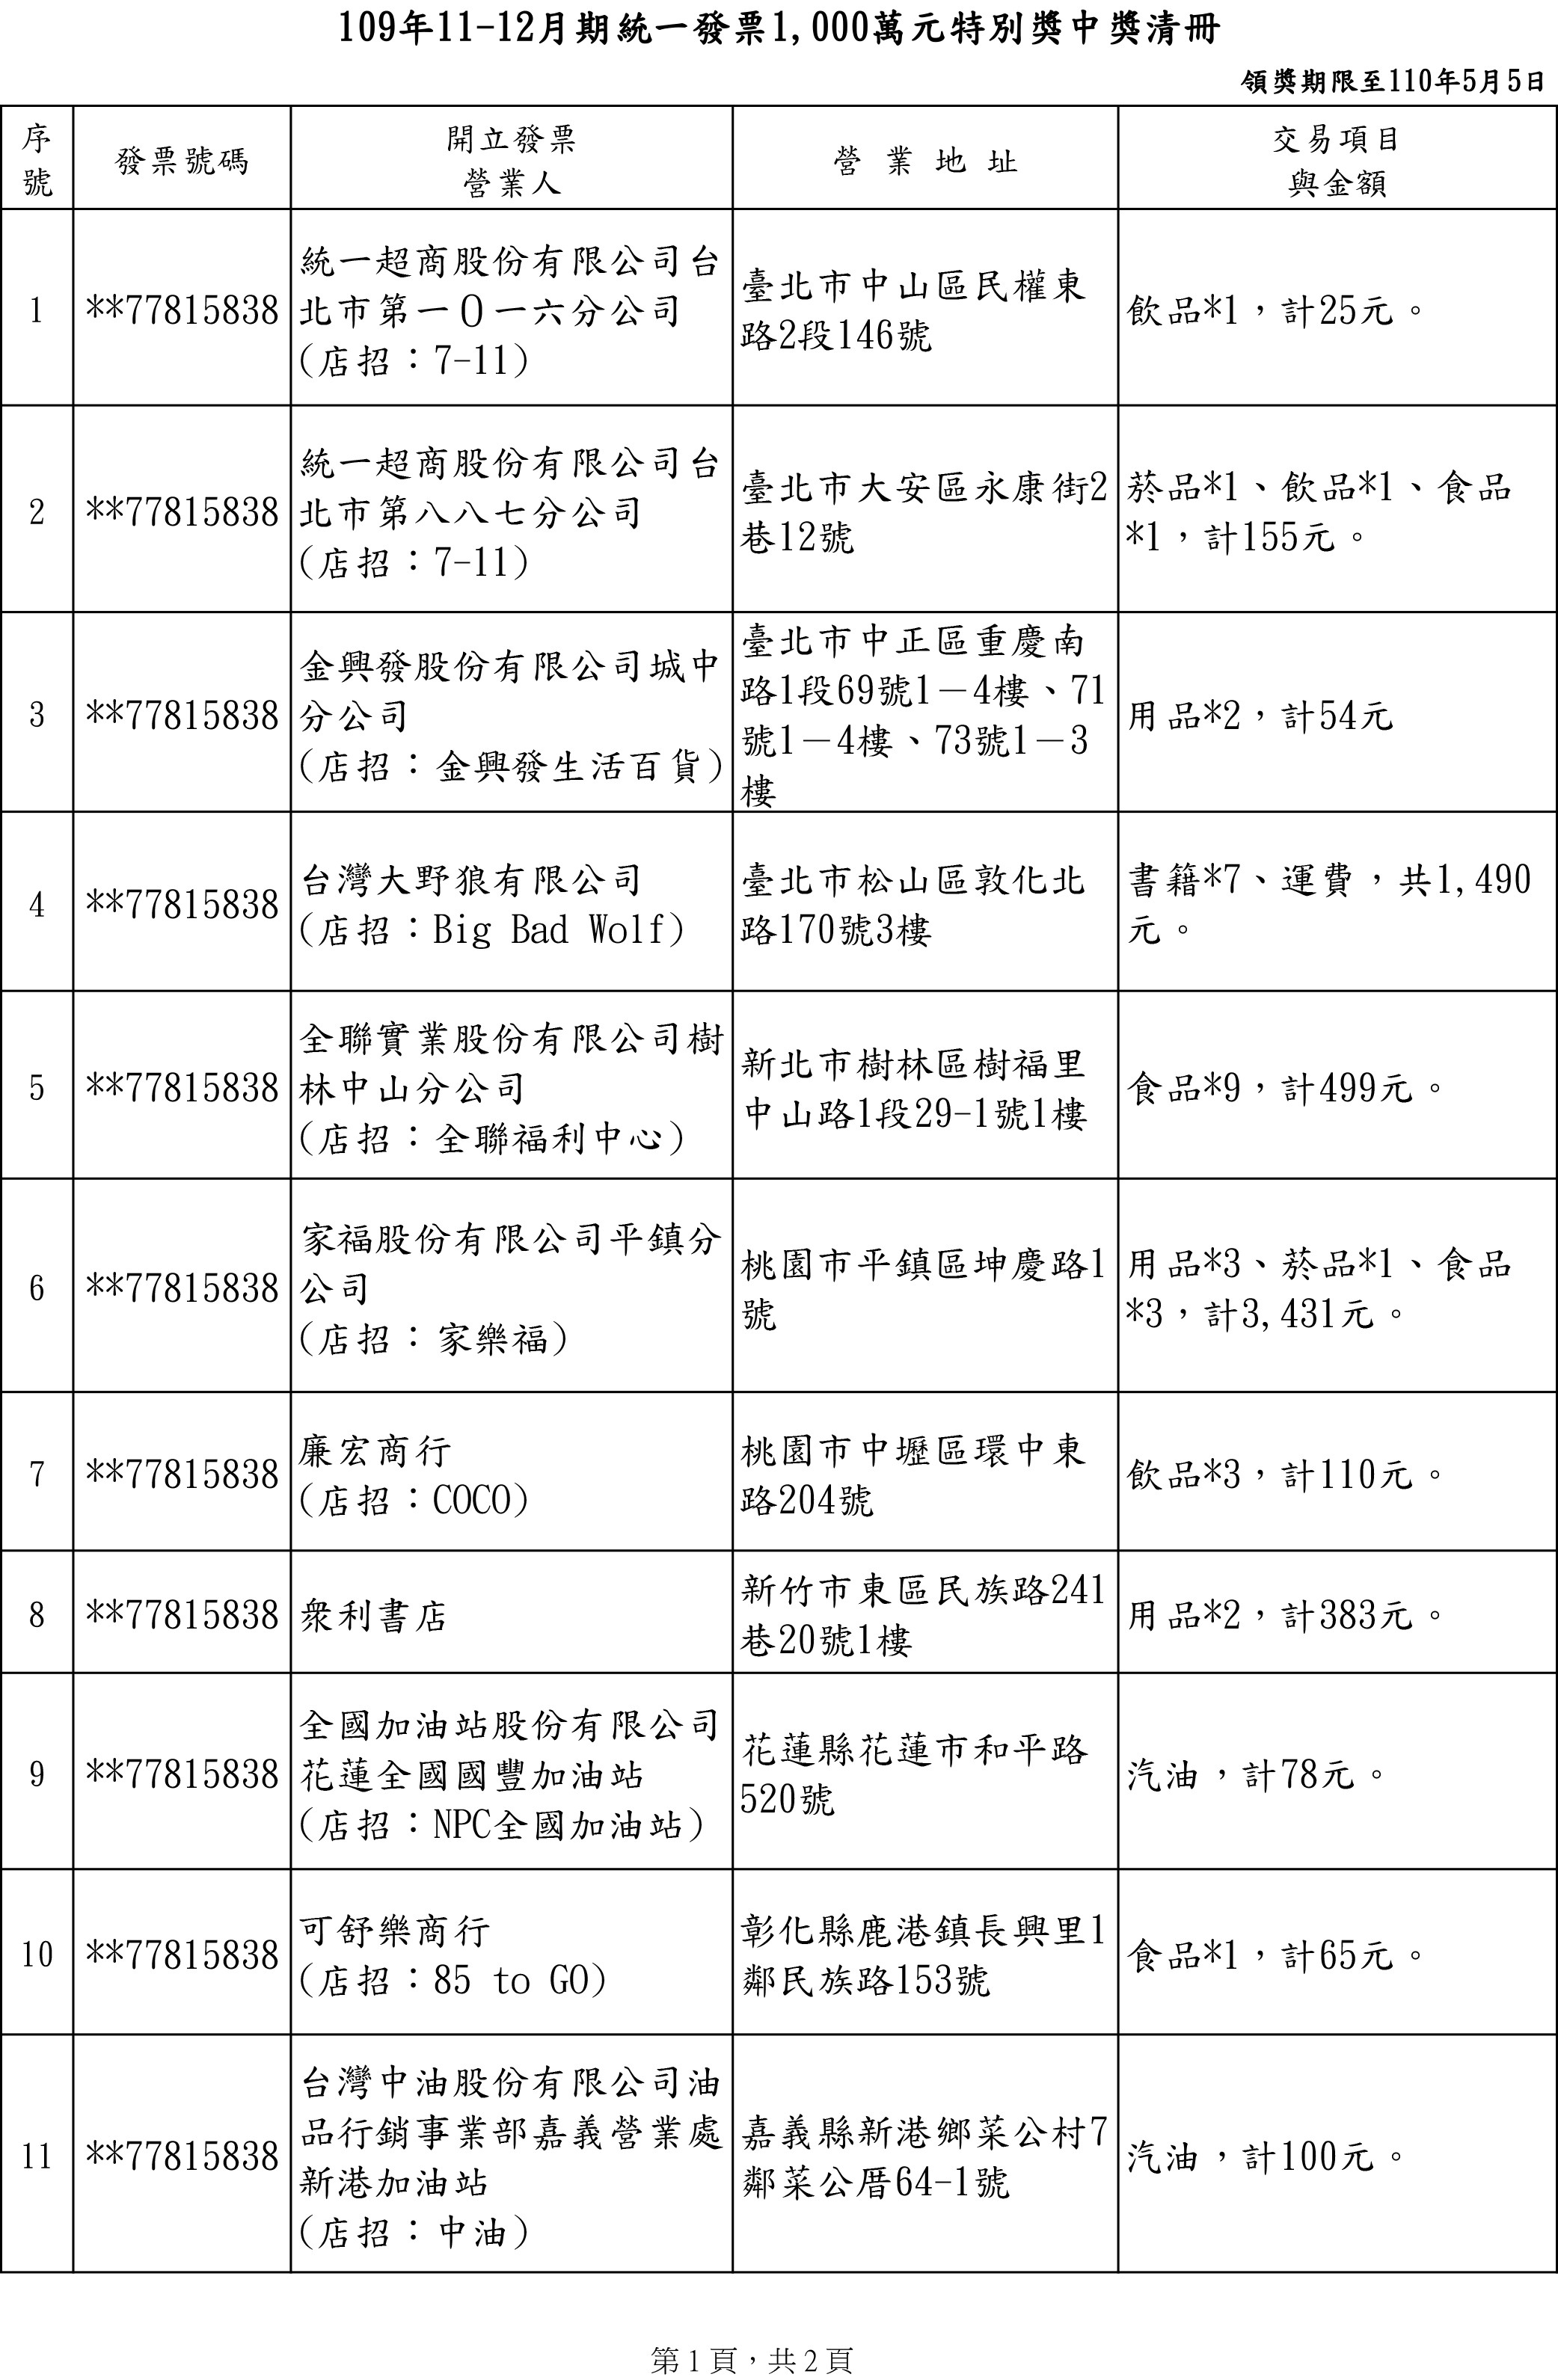 台灣新聞通訊社 快訊 統一發票1 2月中獎號碼出爐 六獎加碼中獎率up Taiwan News Agency